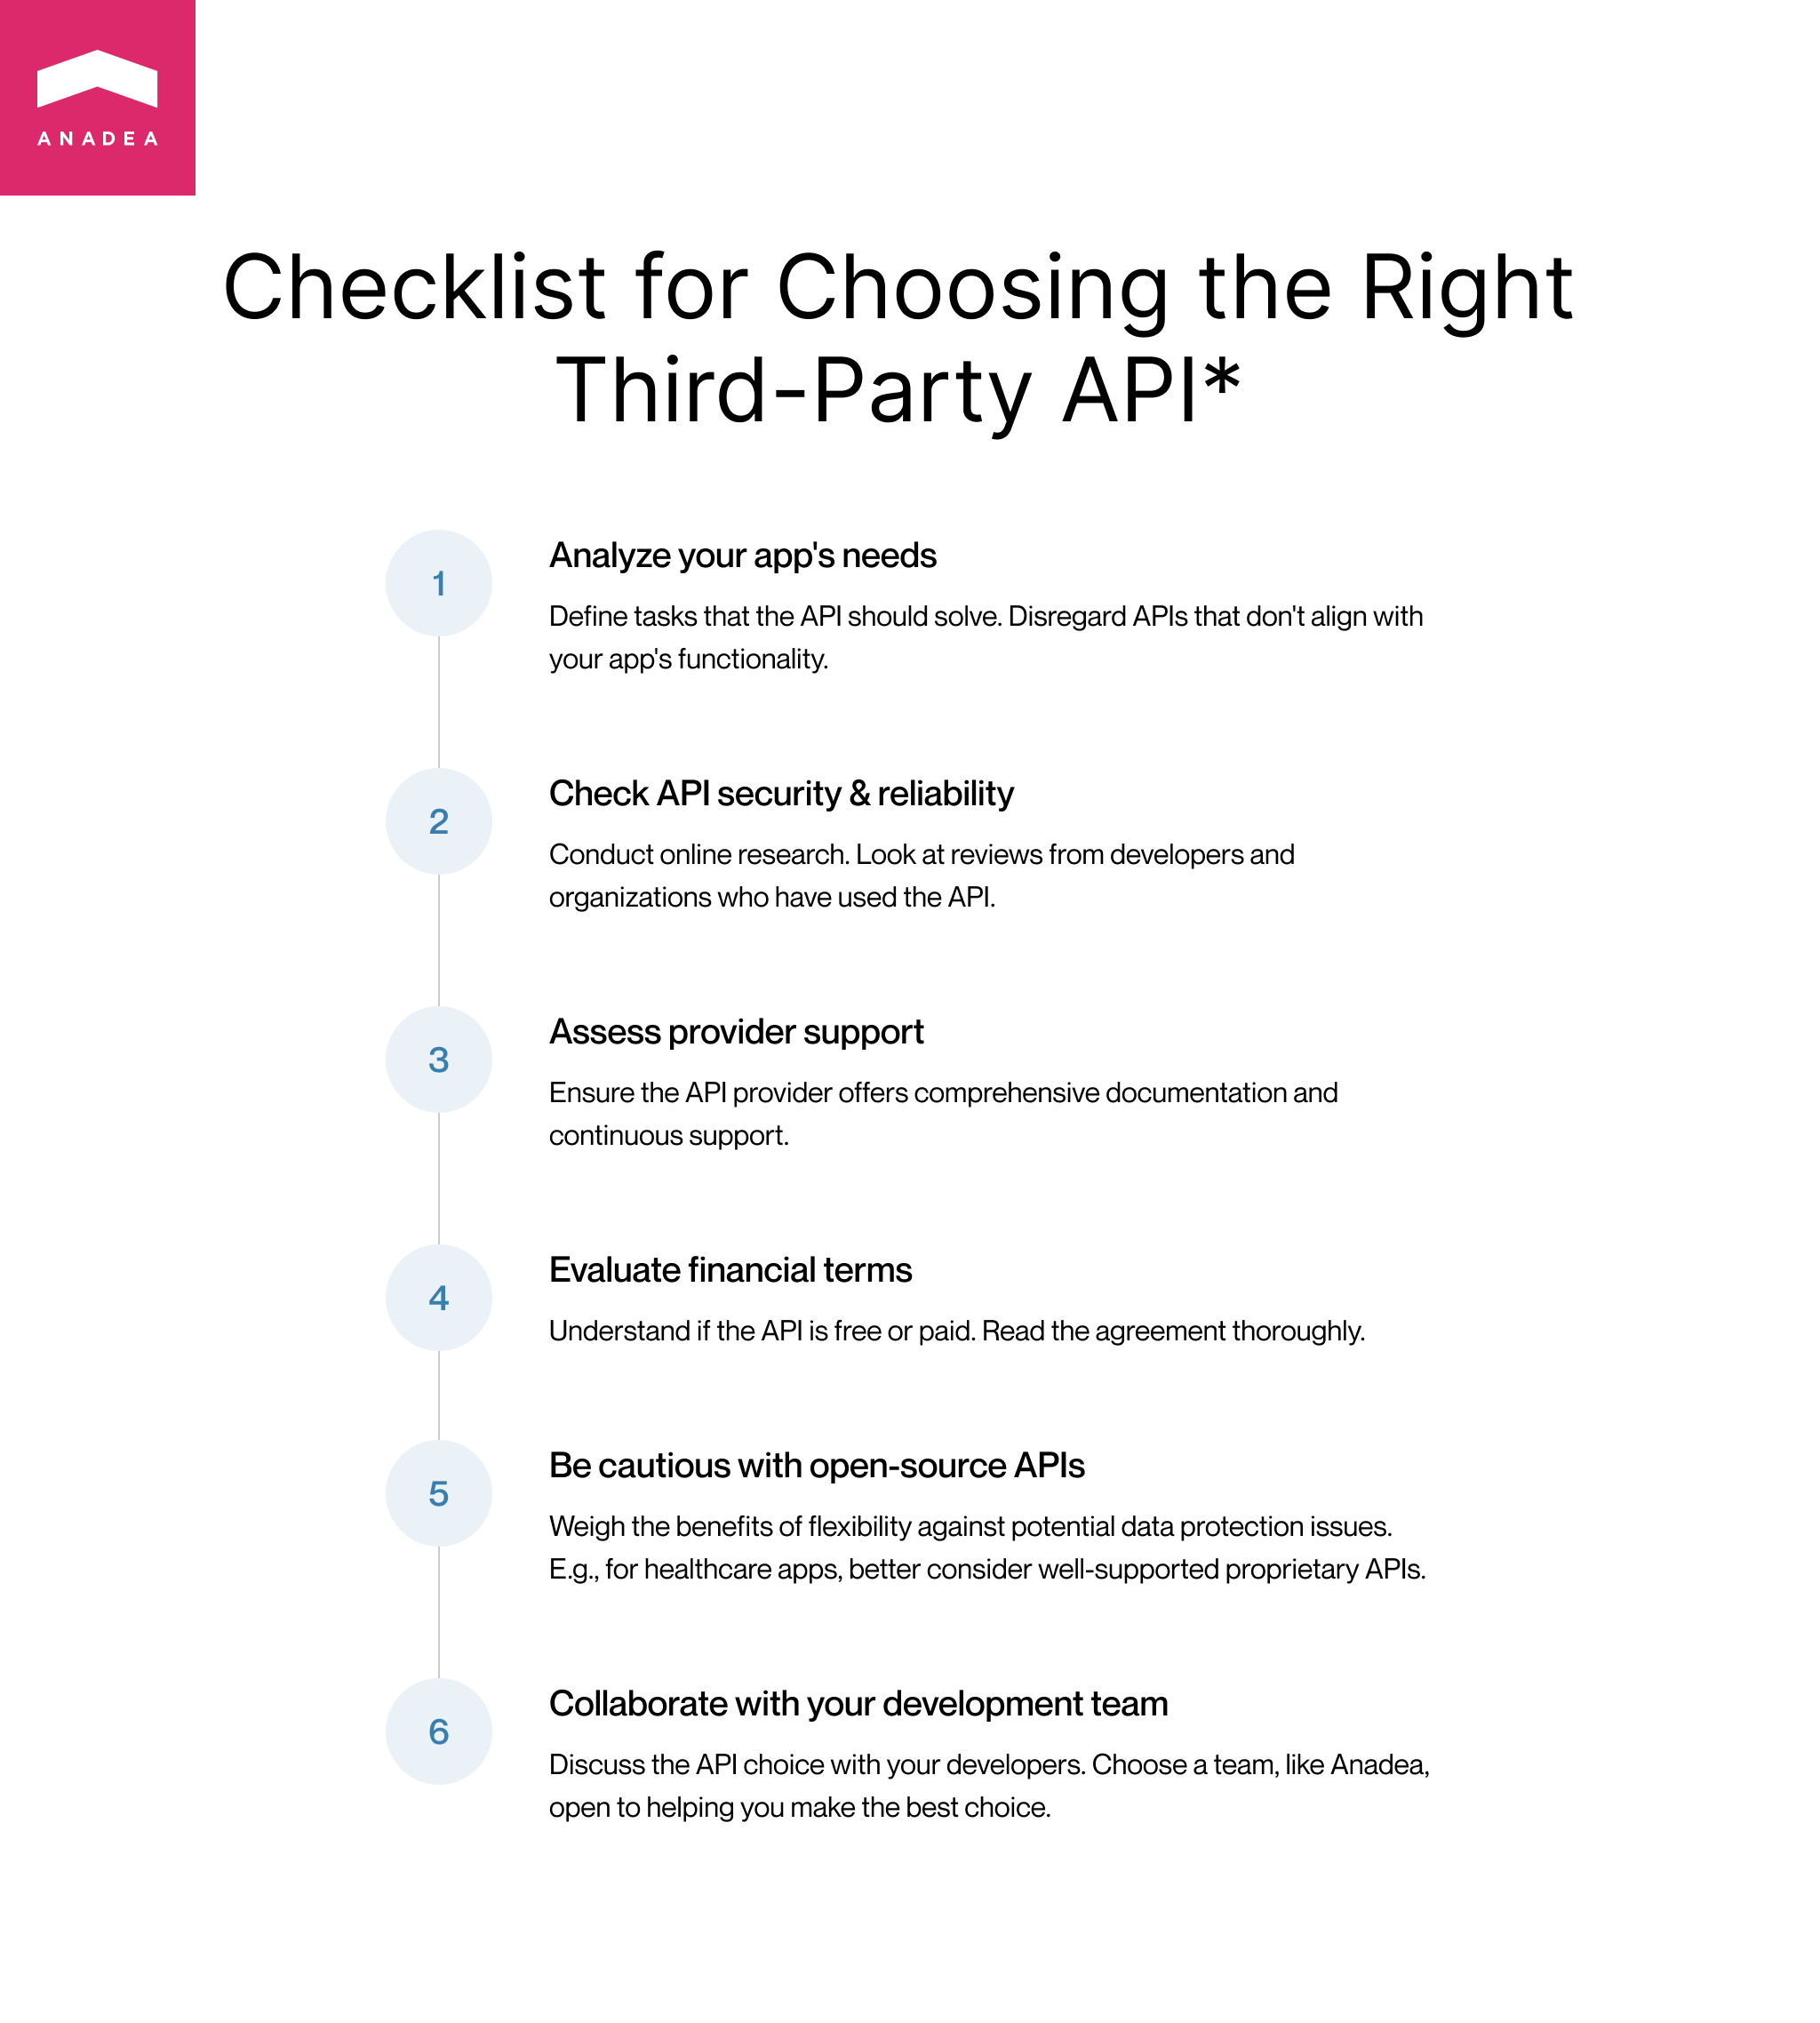 How to choose medical API - Checklist